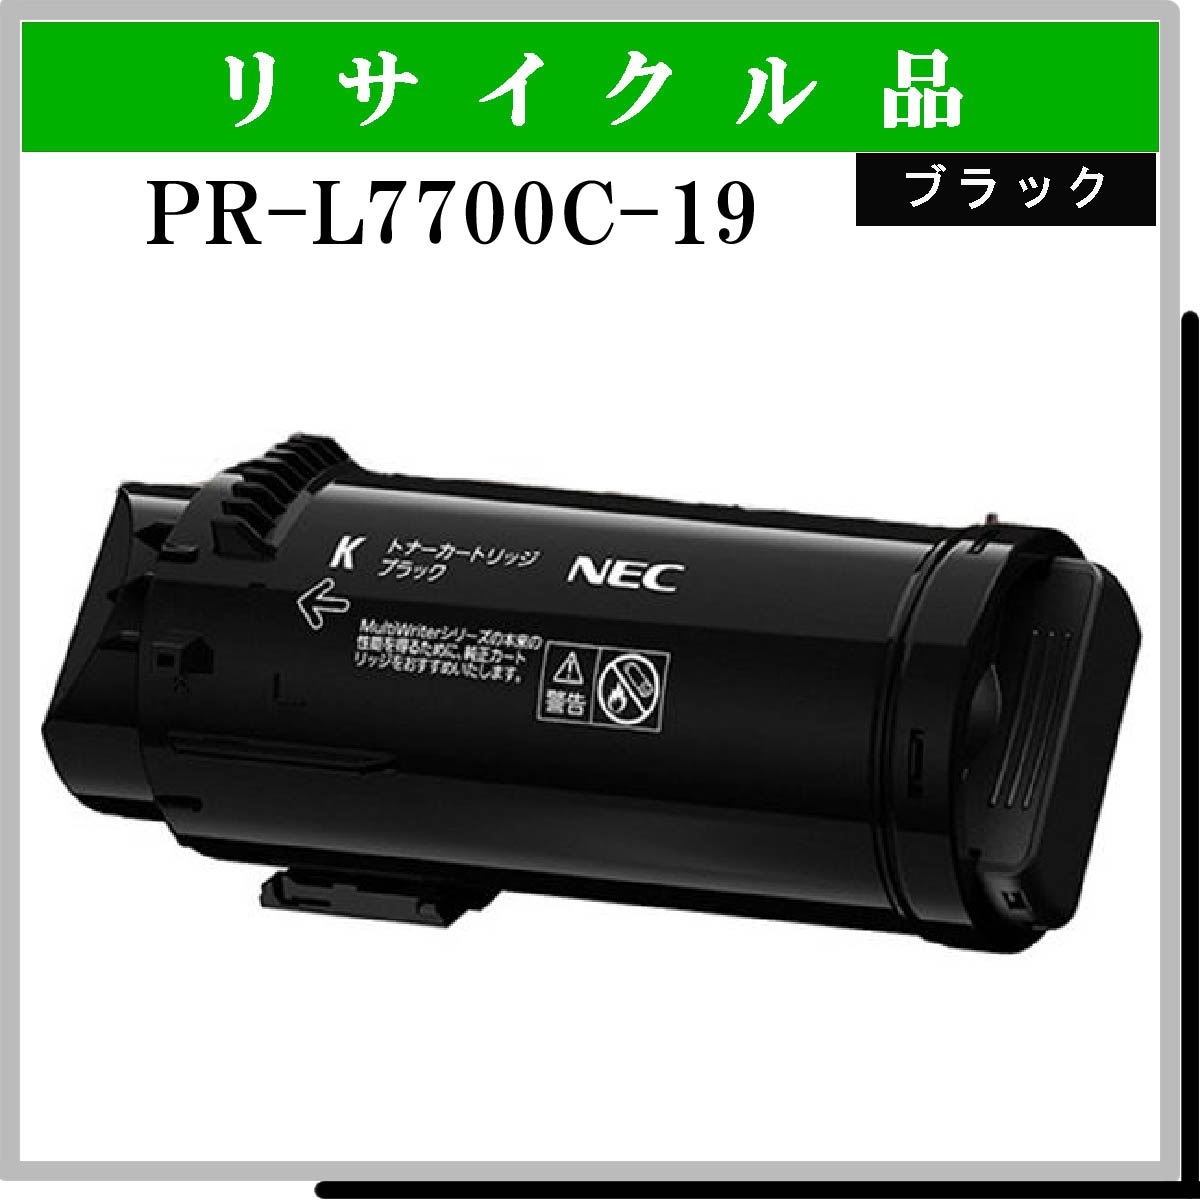 PR-L7700C-19